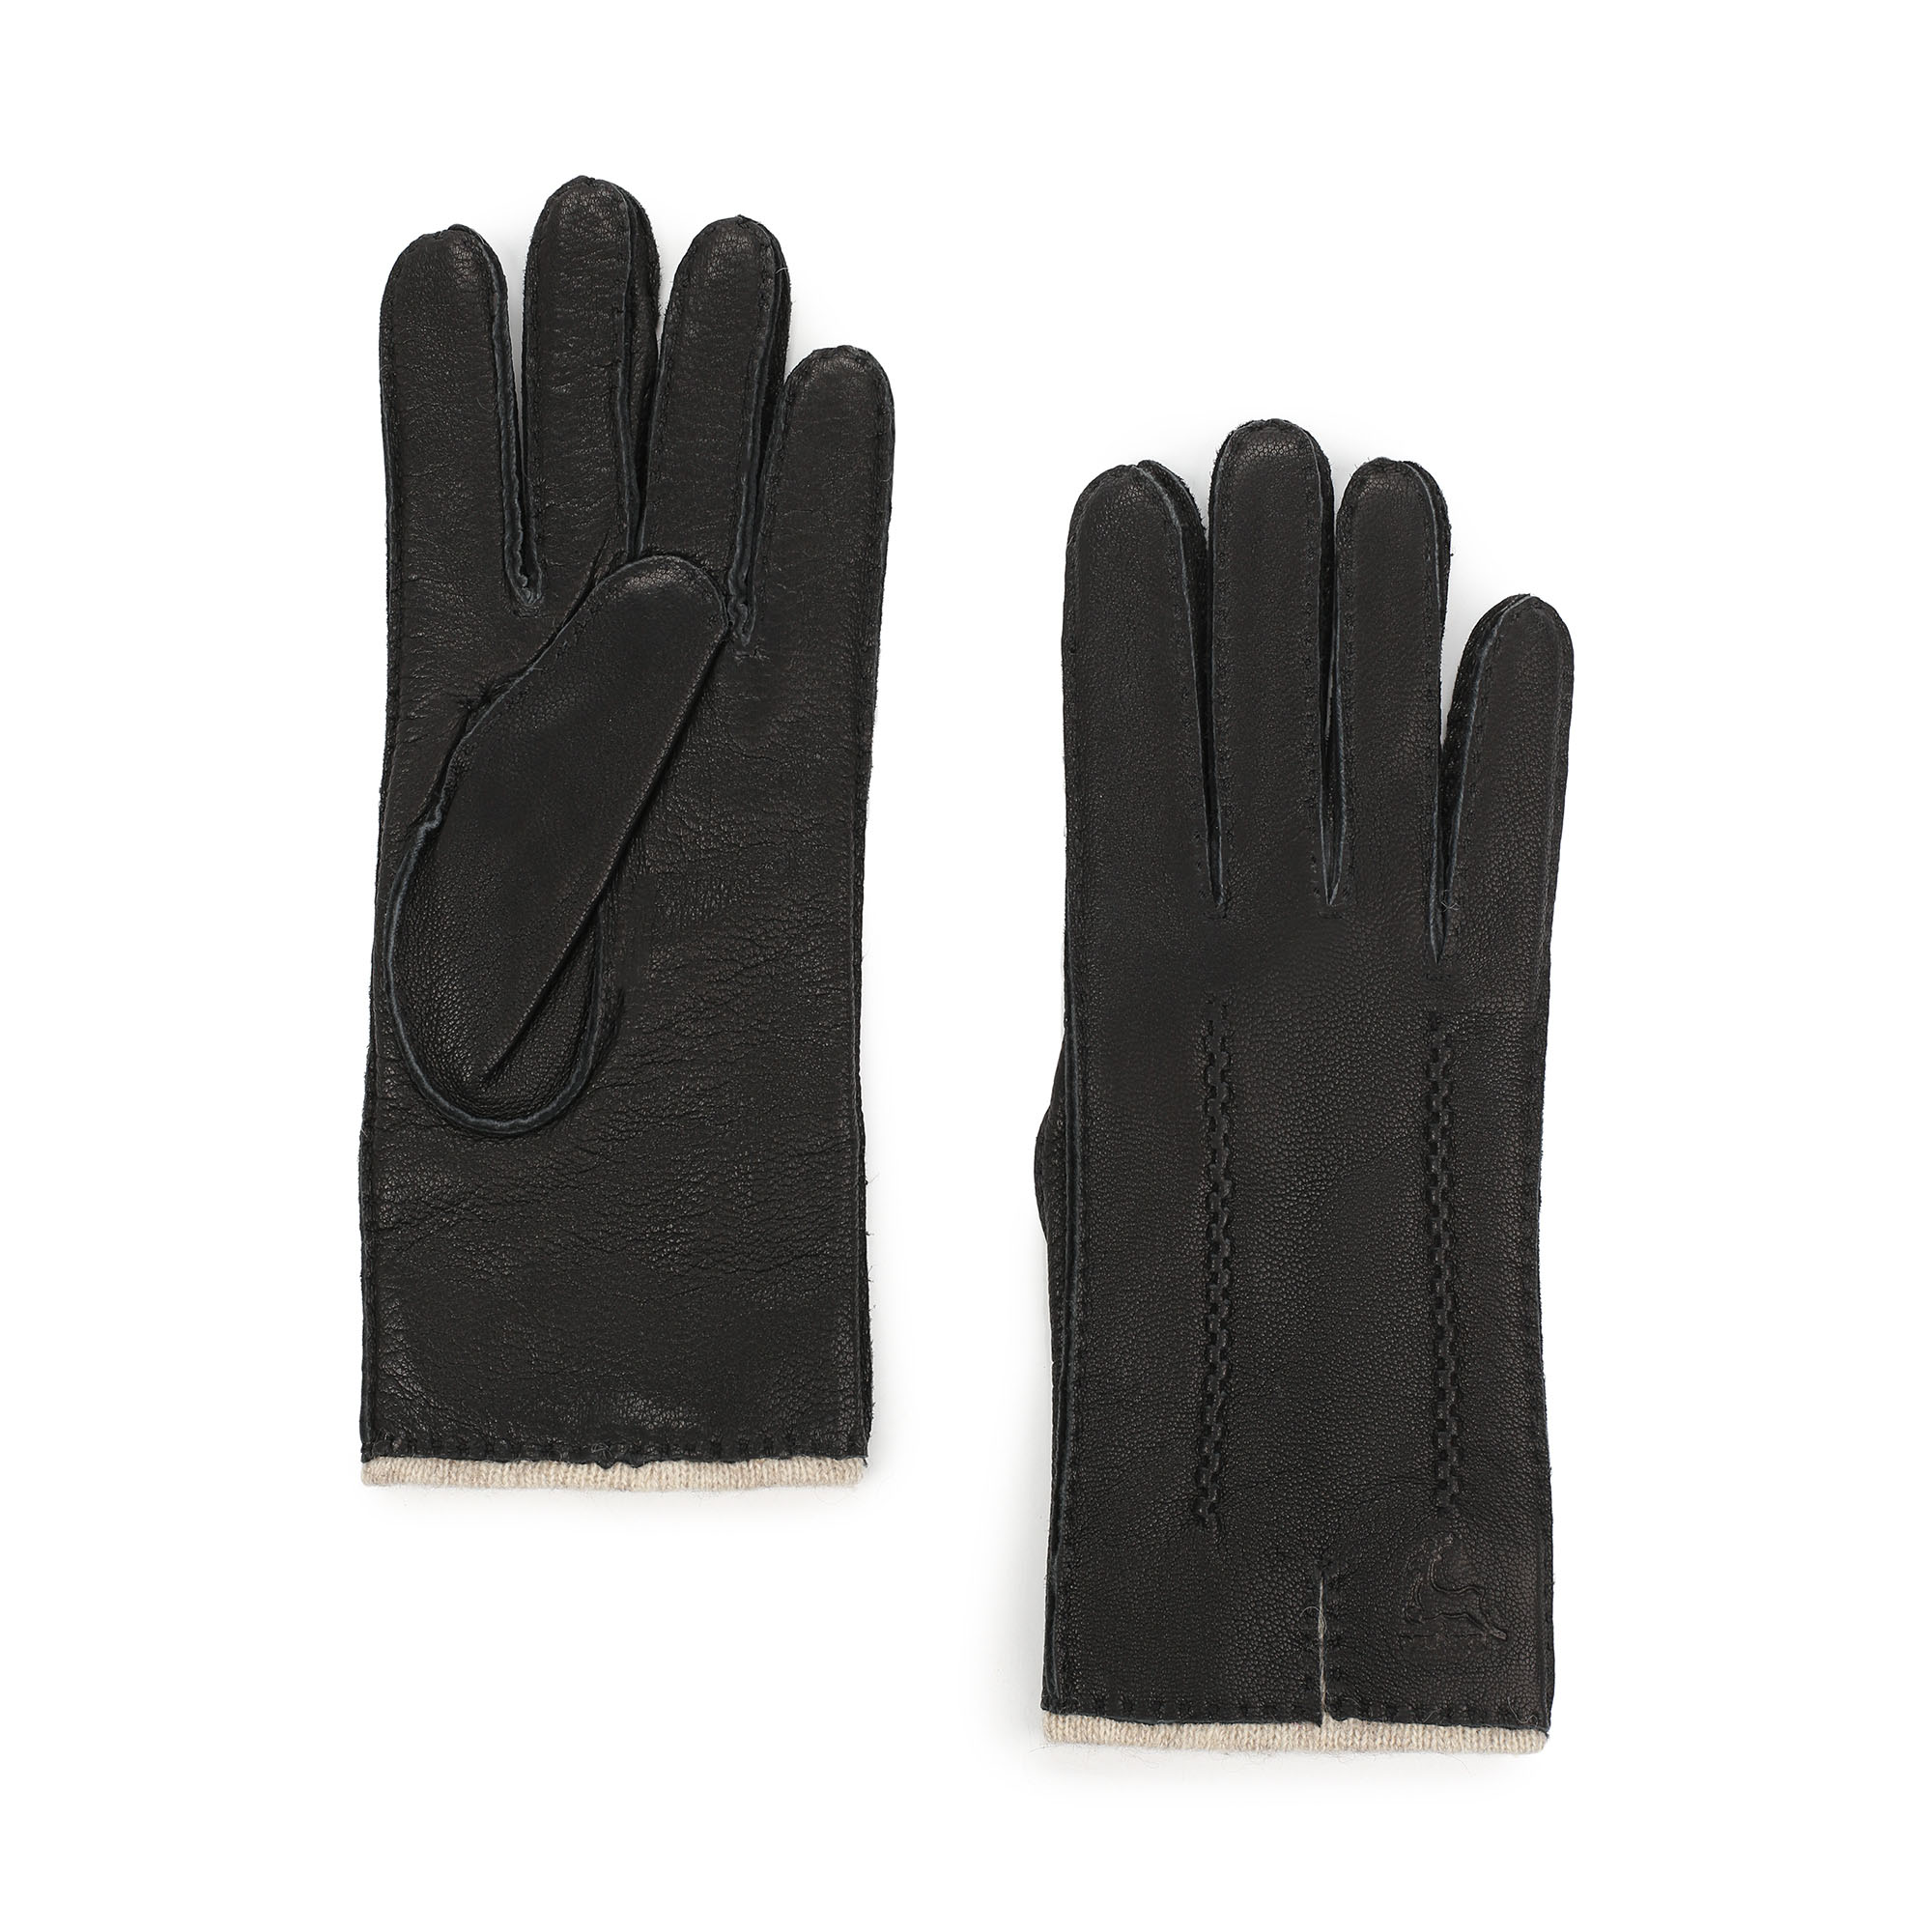 Перчатки Thomas Munz 718-02G-1002, цвет черный, размер 7